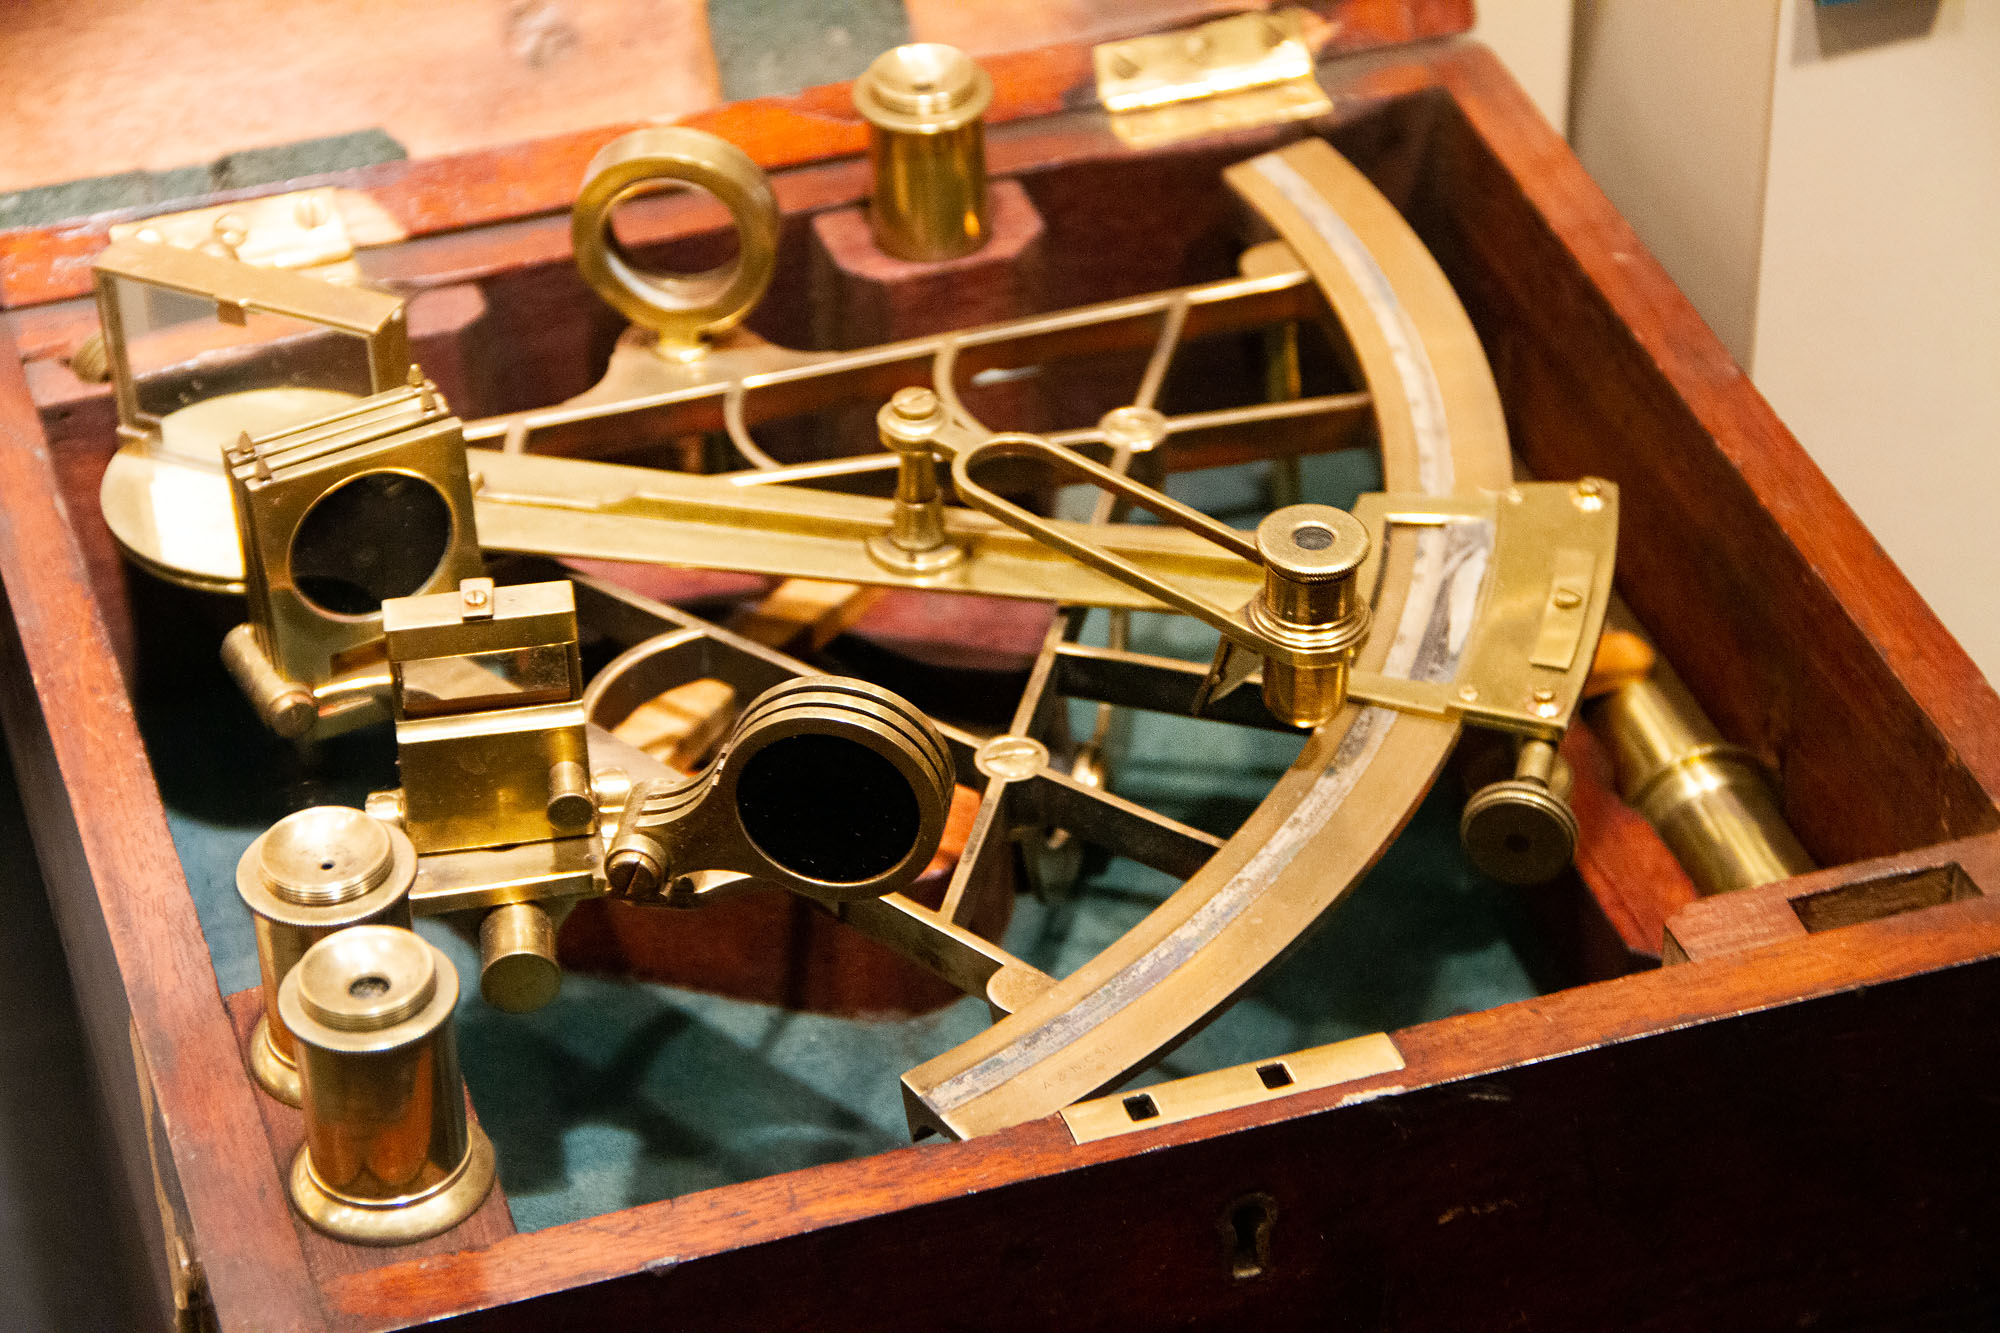 Old navigation tools of sailing boat